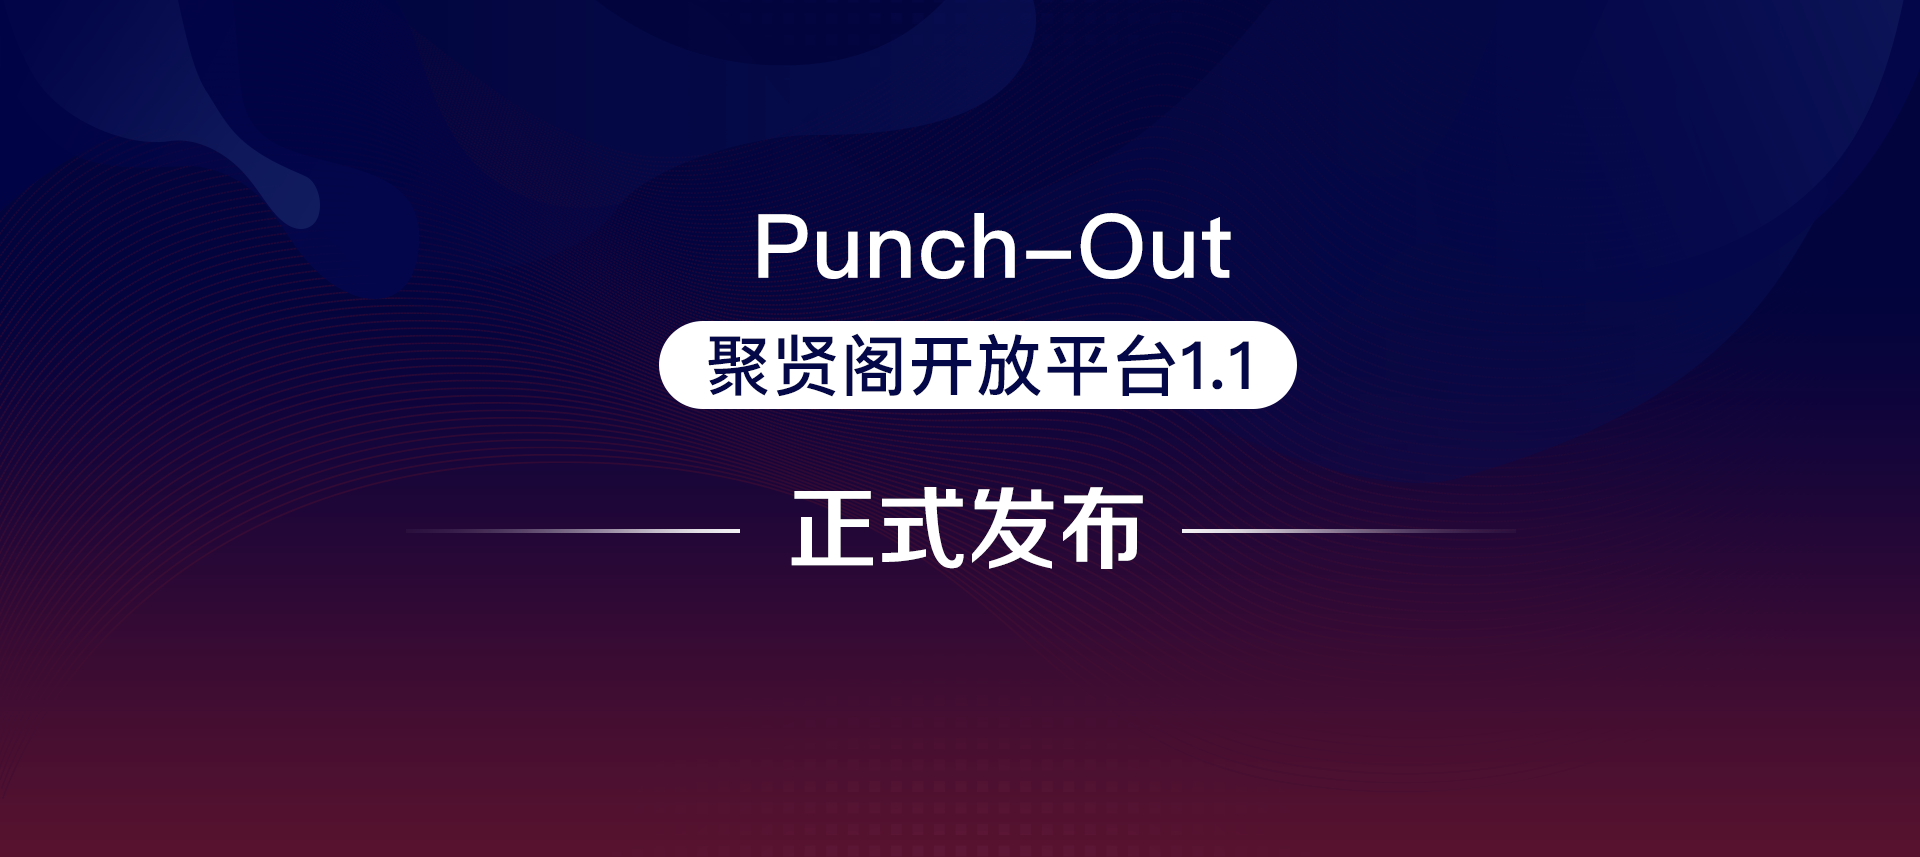 商越发布聚贤阁1.1版本，开创国内首个支持punchout方式对接的采购SaaS平台！